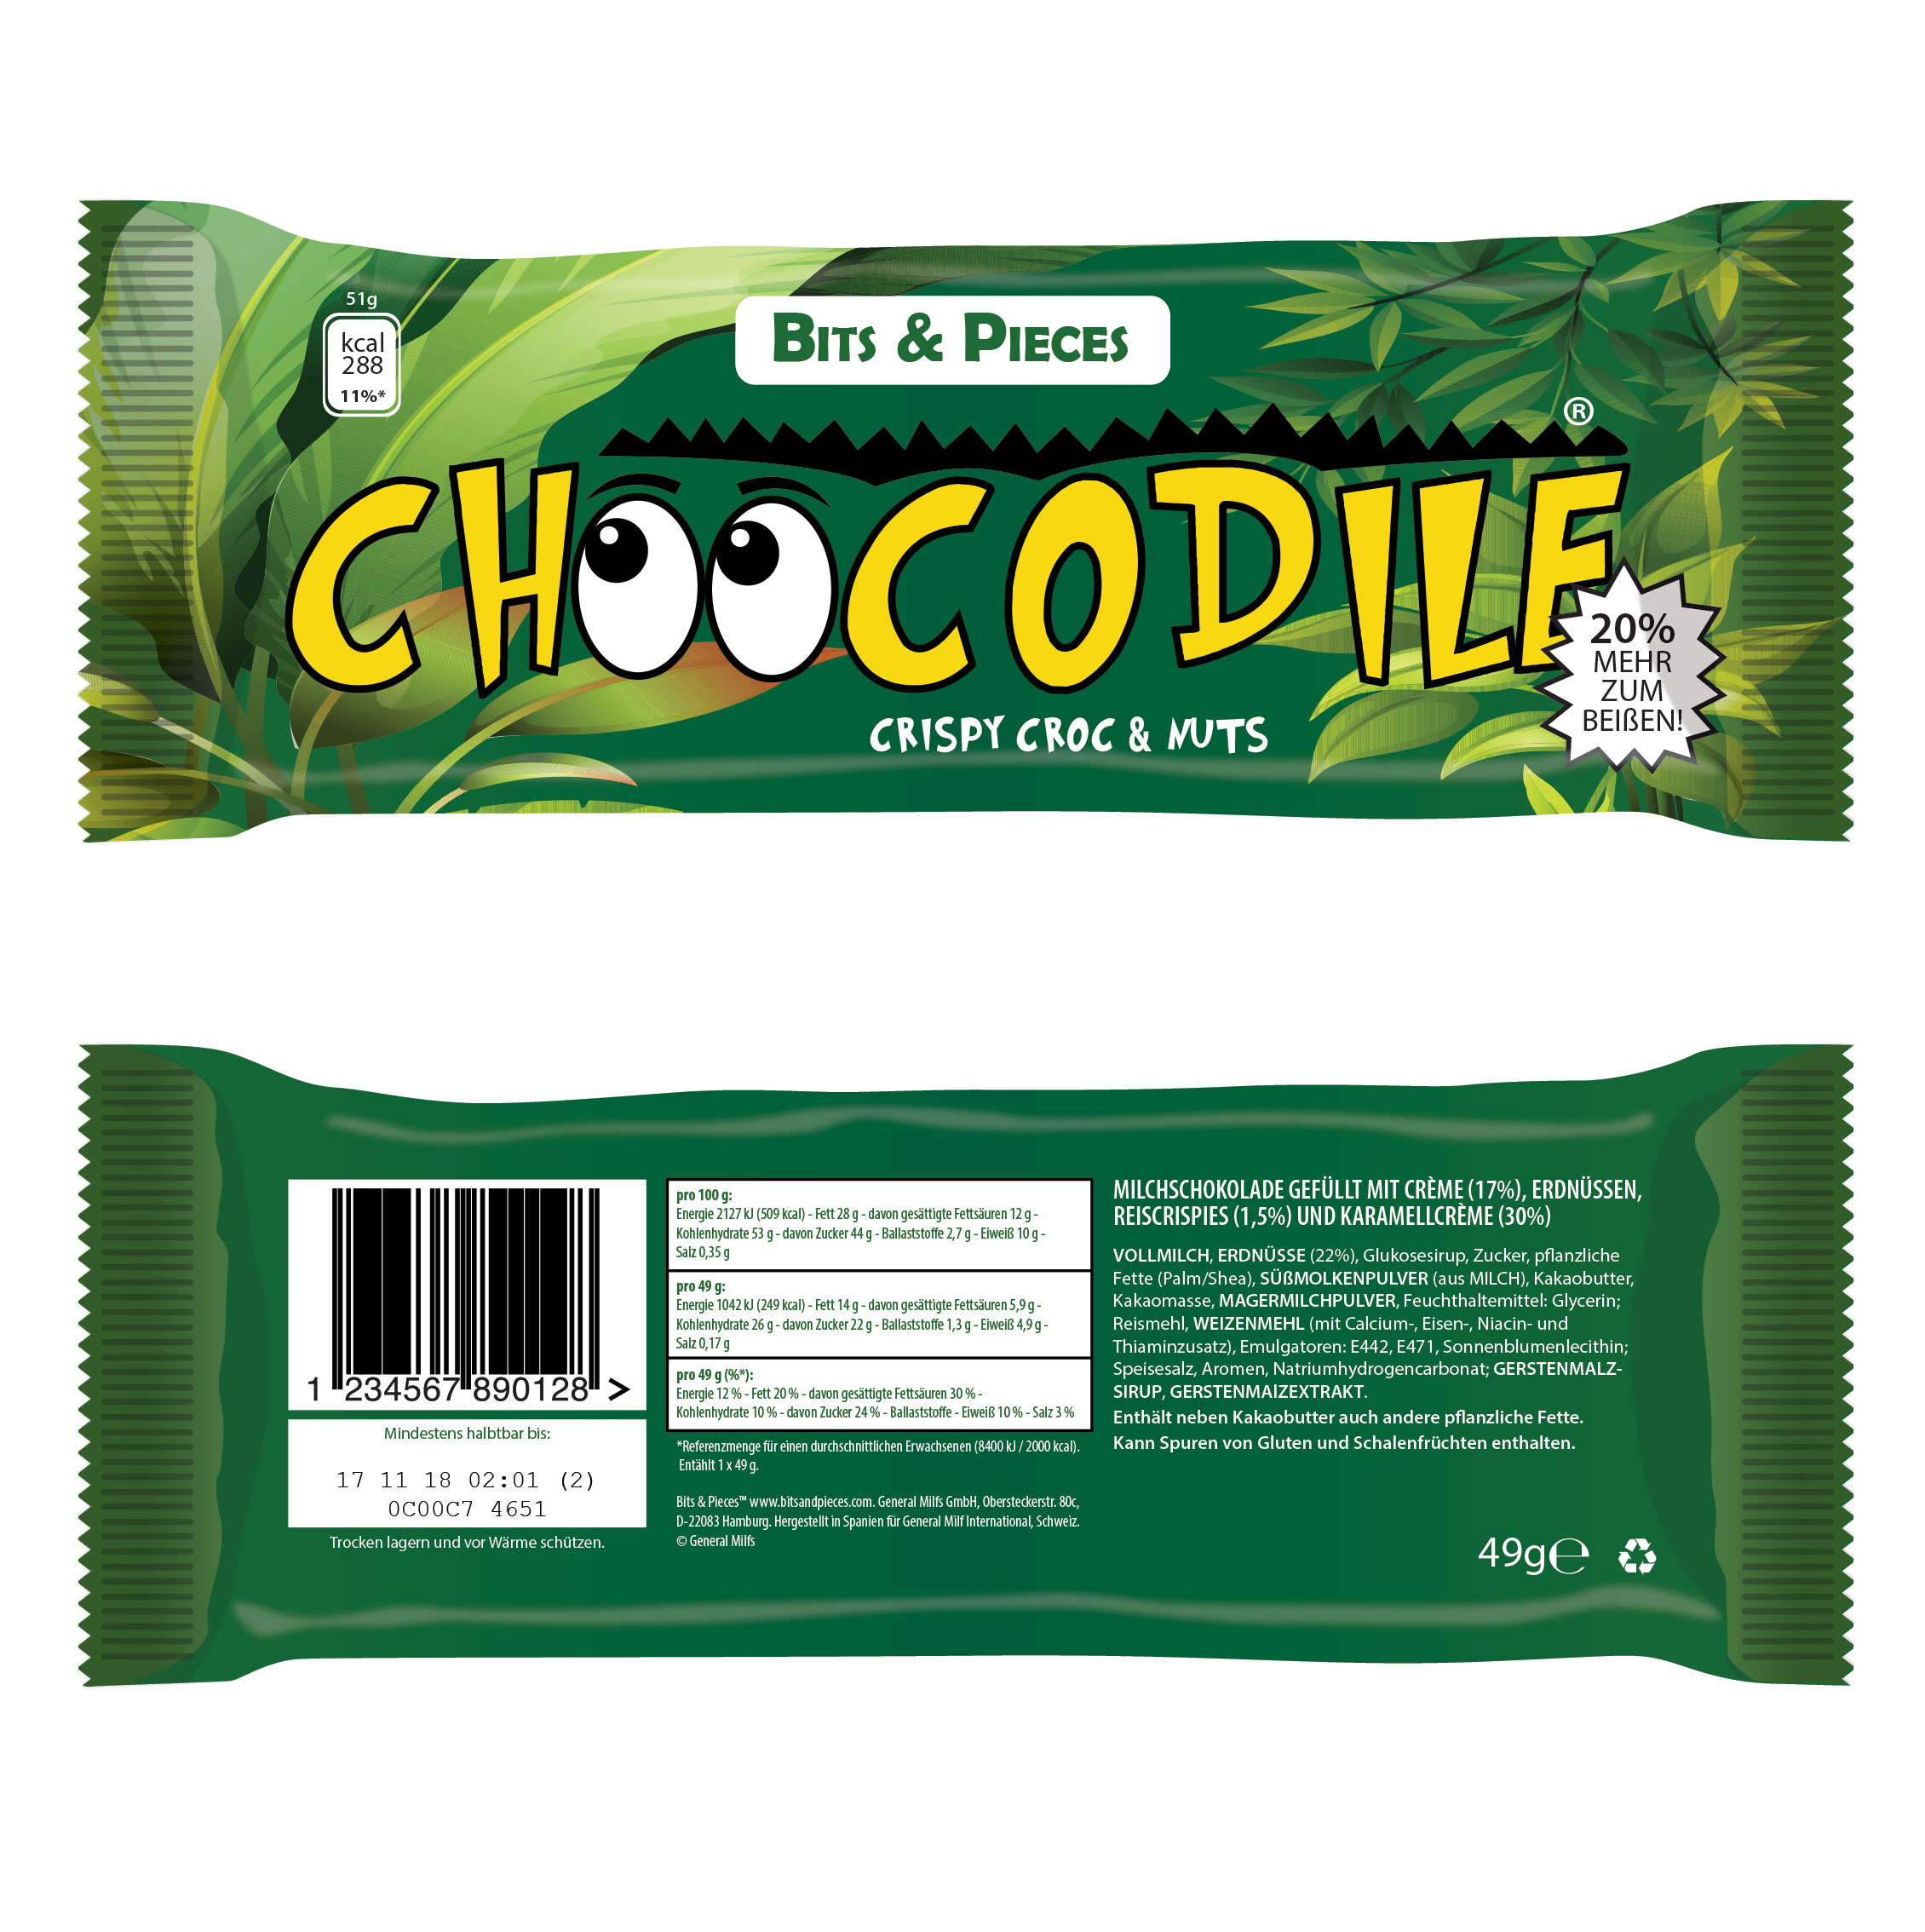 Schokoriegel Choocodile mit bunter Verpackung als Beispiel für die vielfältigen Themengebiete der Mediengestaltung.